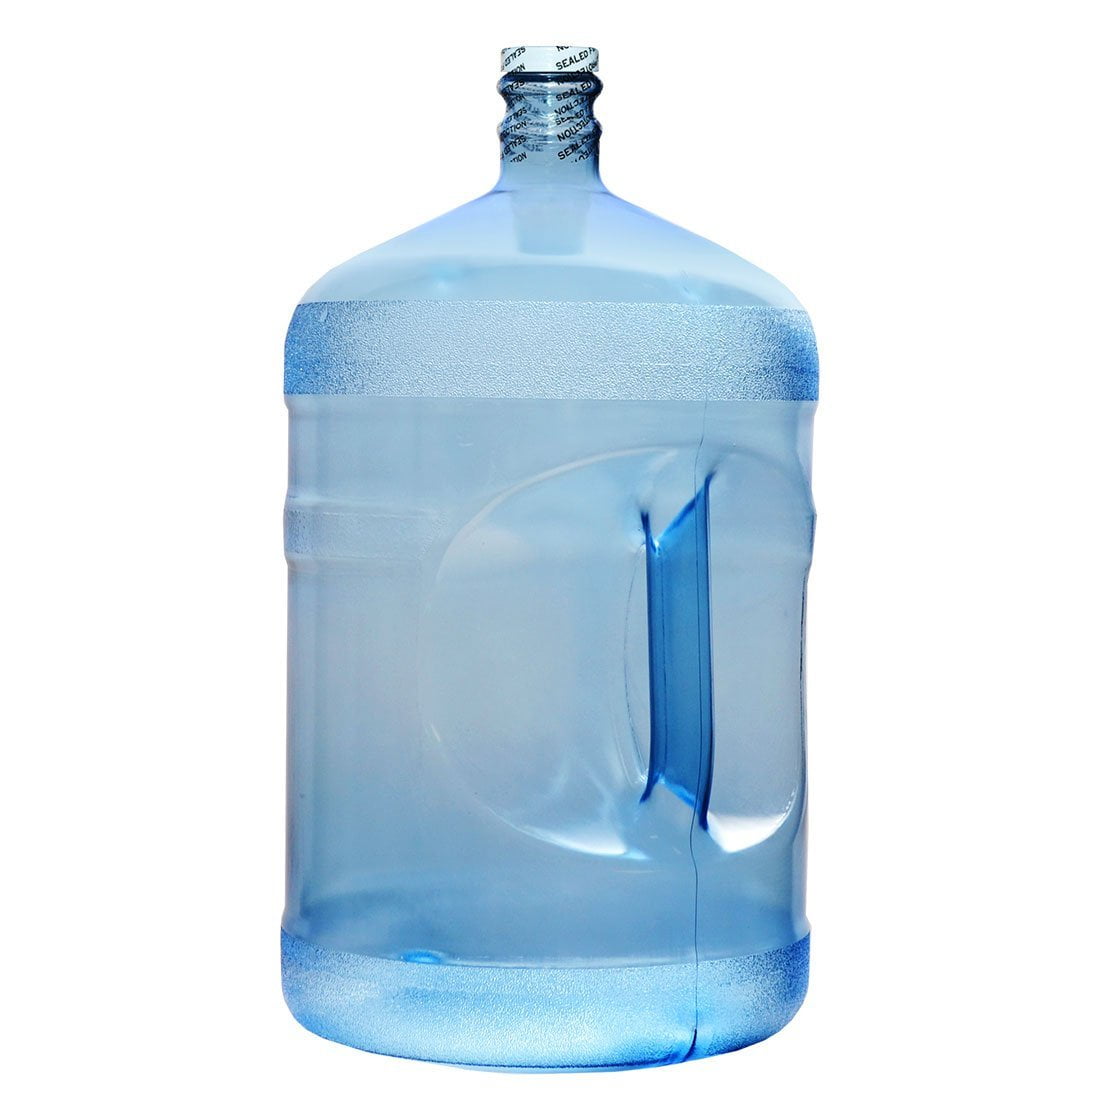 are-5-gallon-plastic-water-jugs-safe-answereco